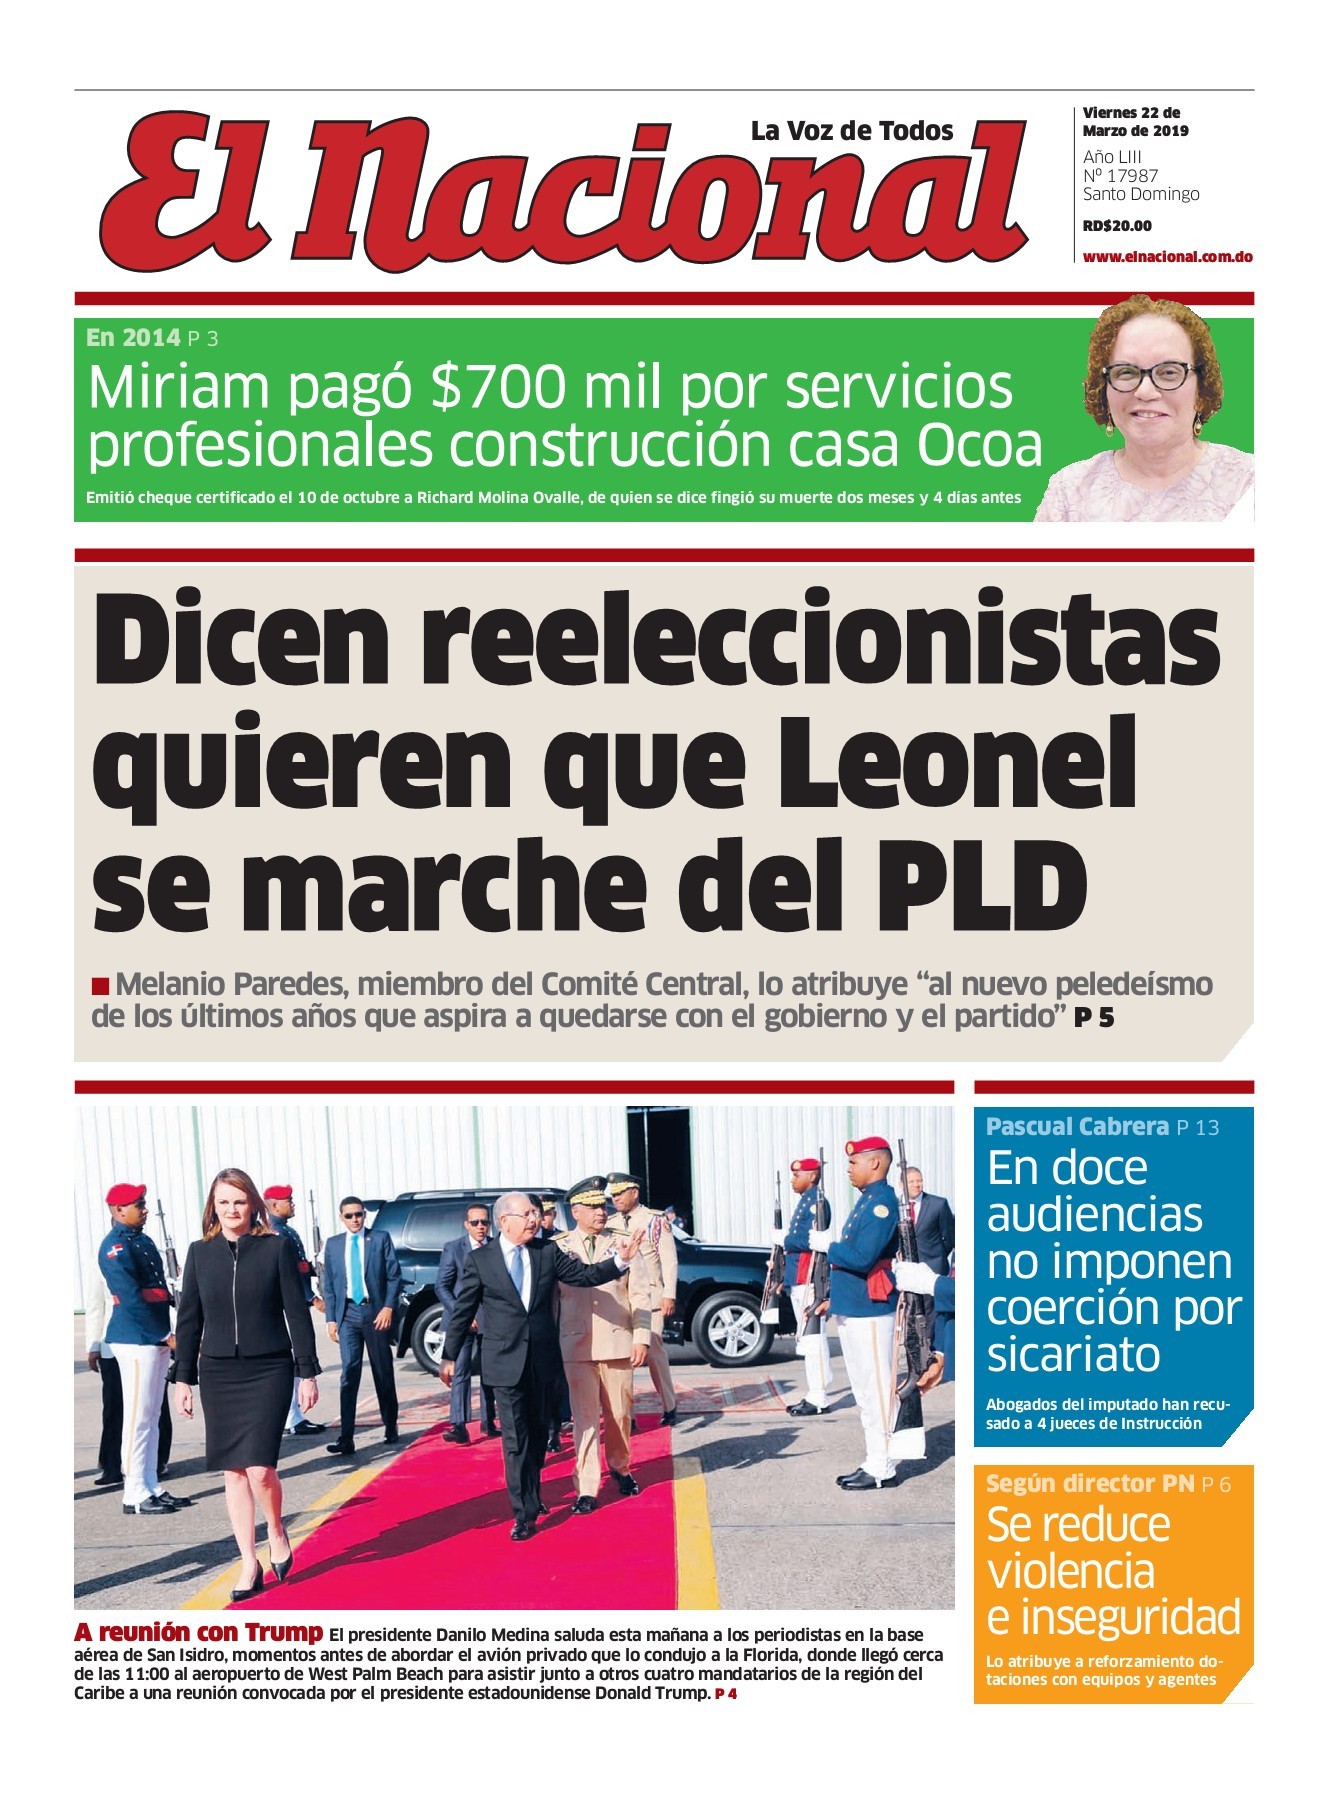 Portada Periódico El Nacional, Viernes 22 de Marzo 2019